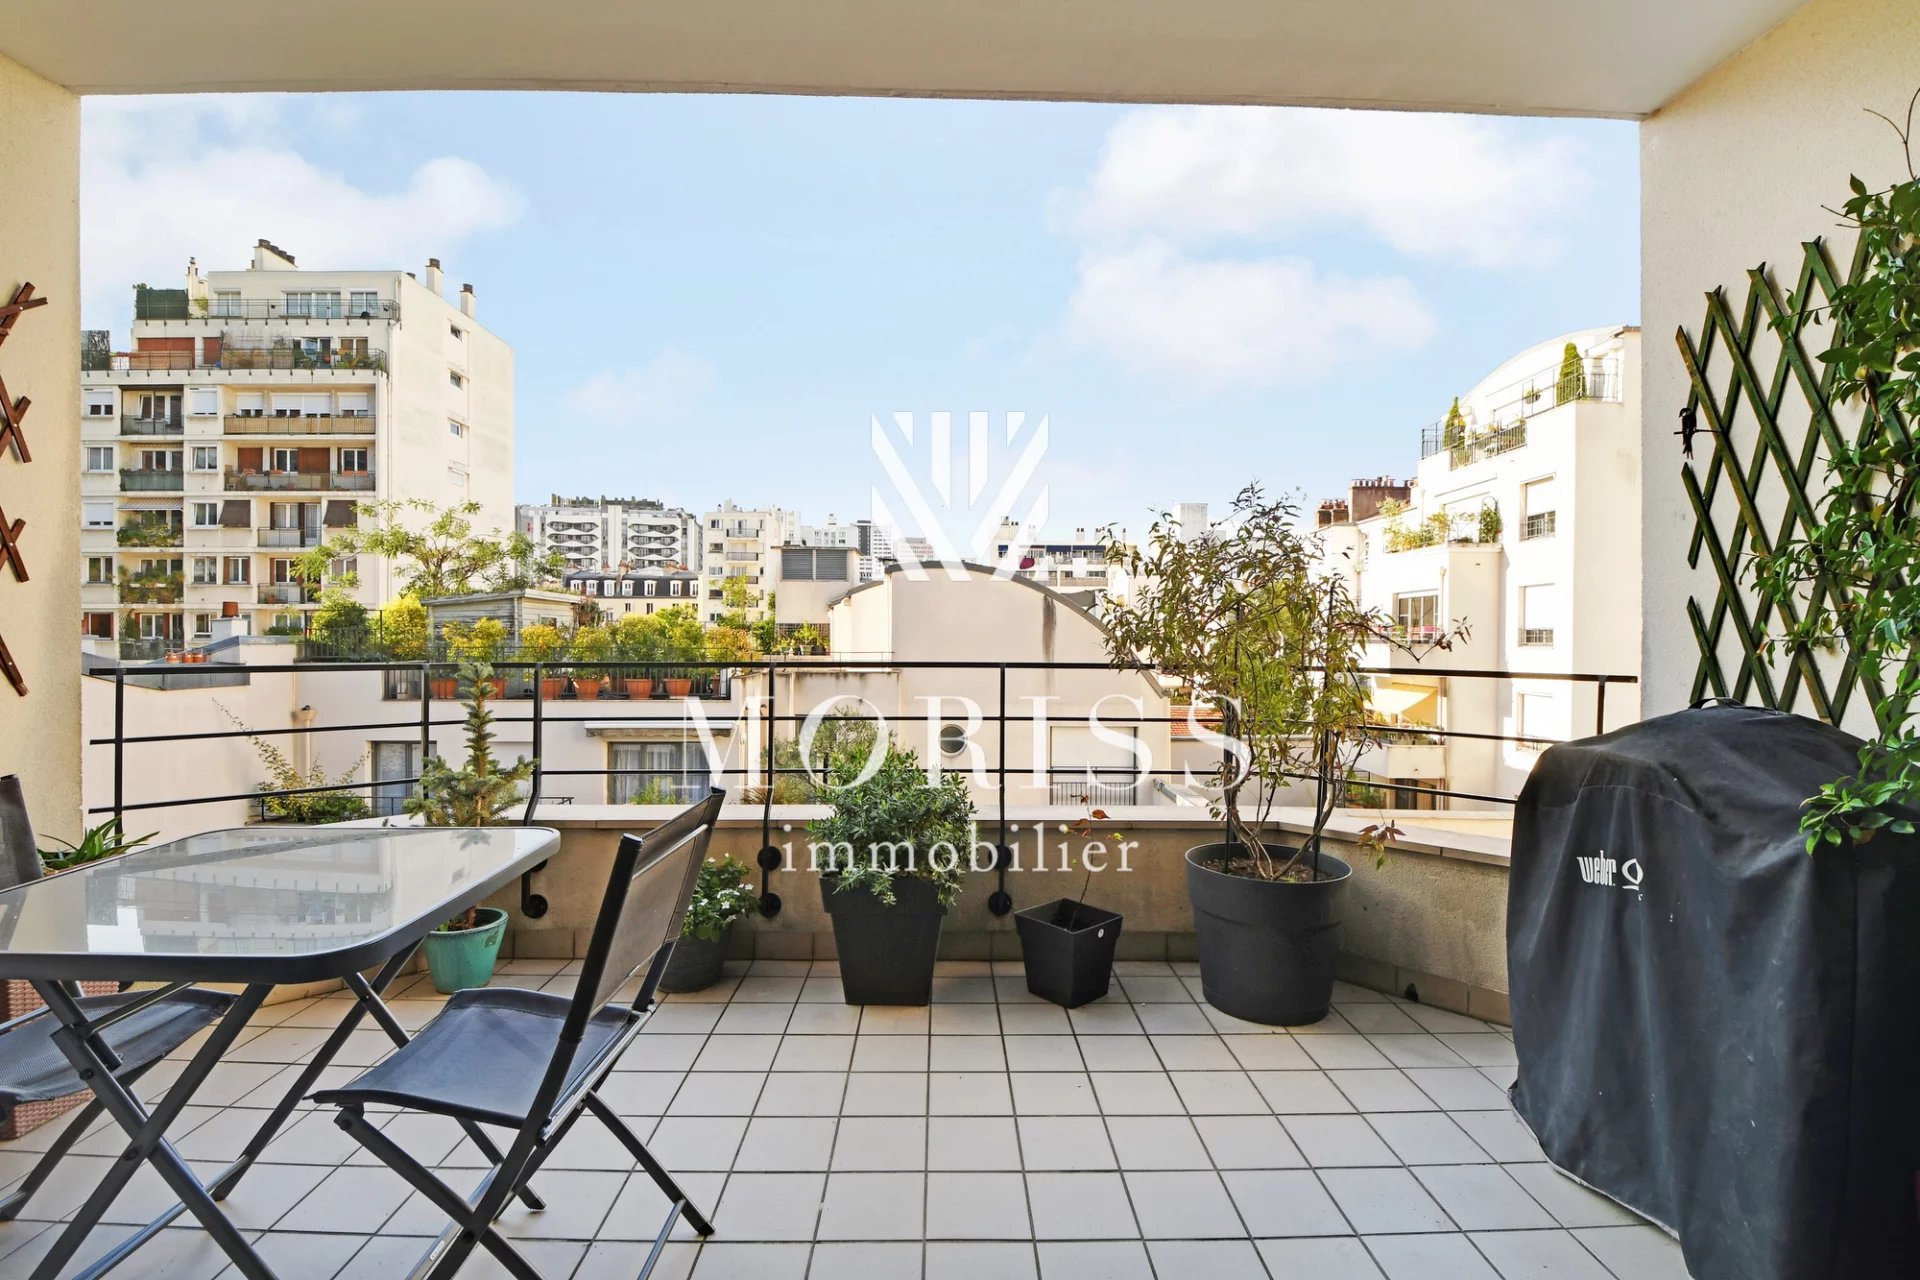 75014 Paris - Appartement familial avec terrasse - Image Array